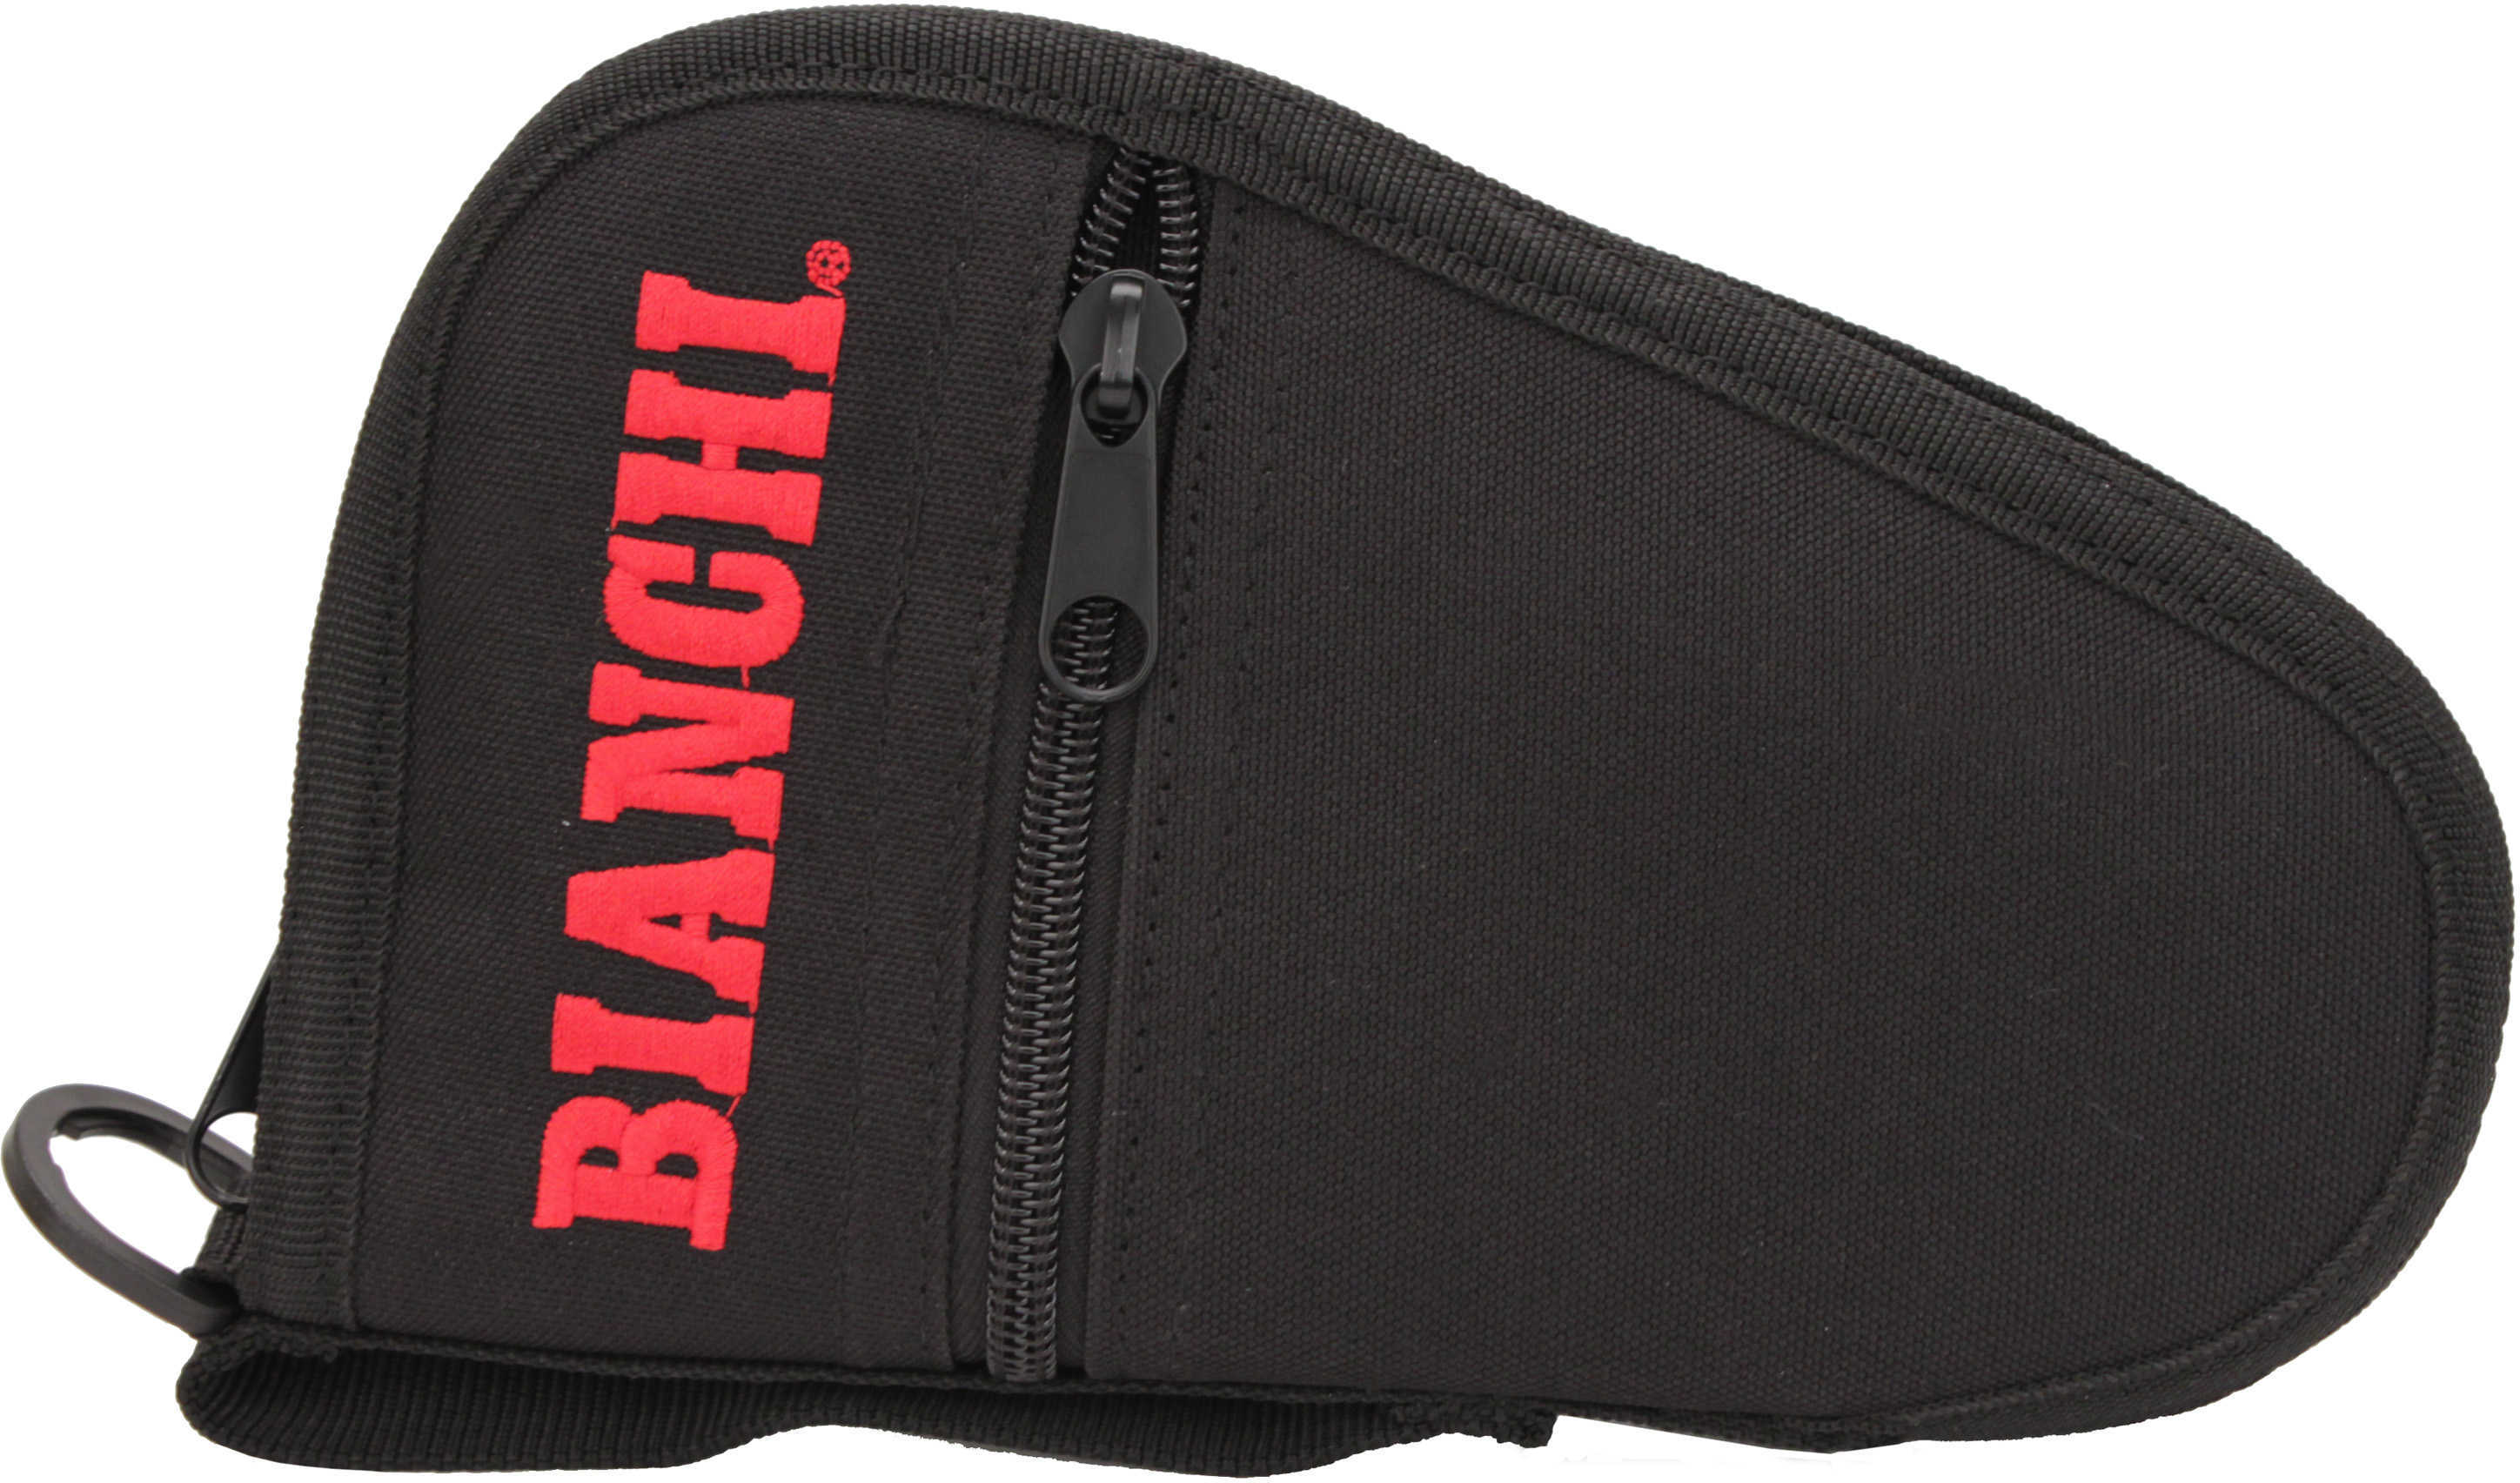 Bianchi Black Pistol Case With Zipper Side Pocket Md: 19715